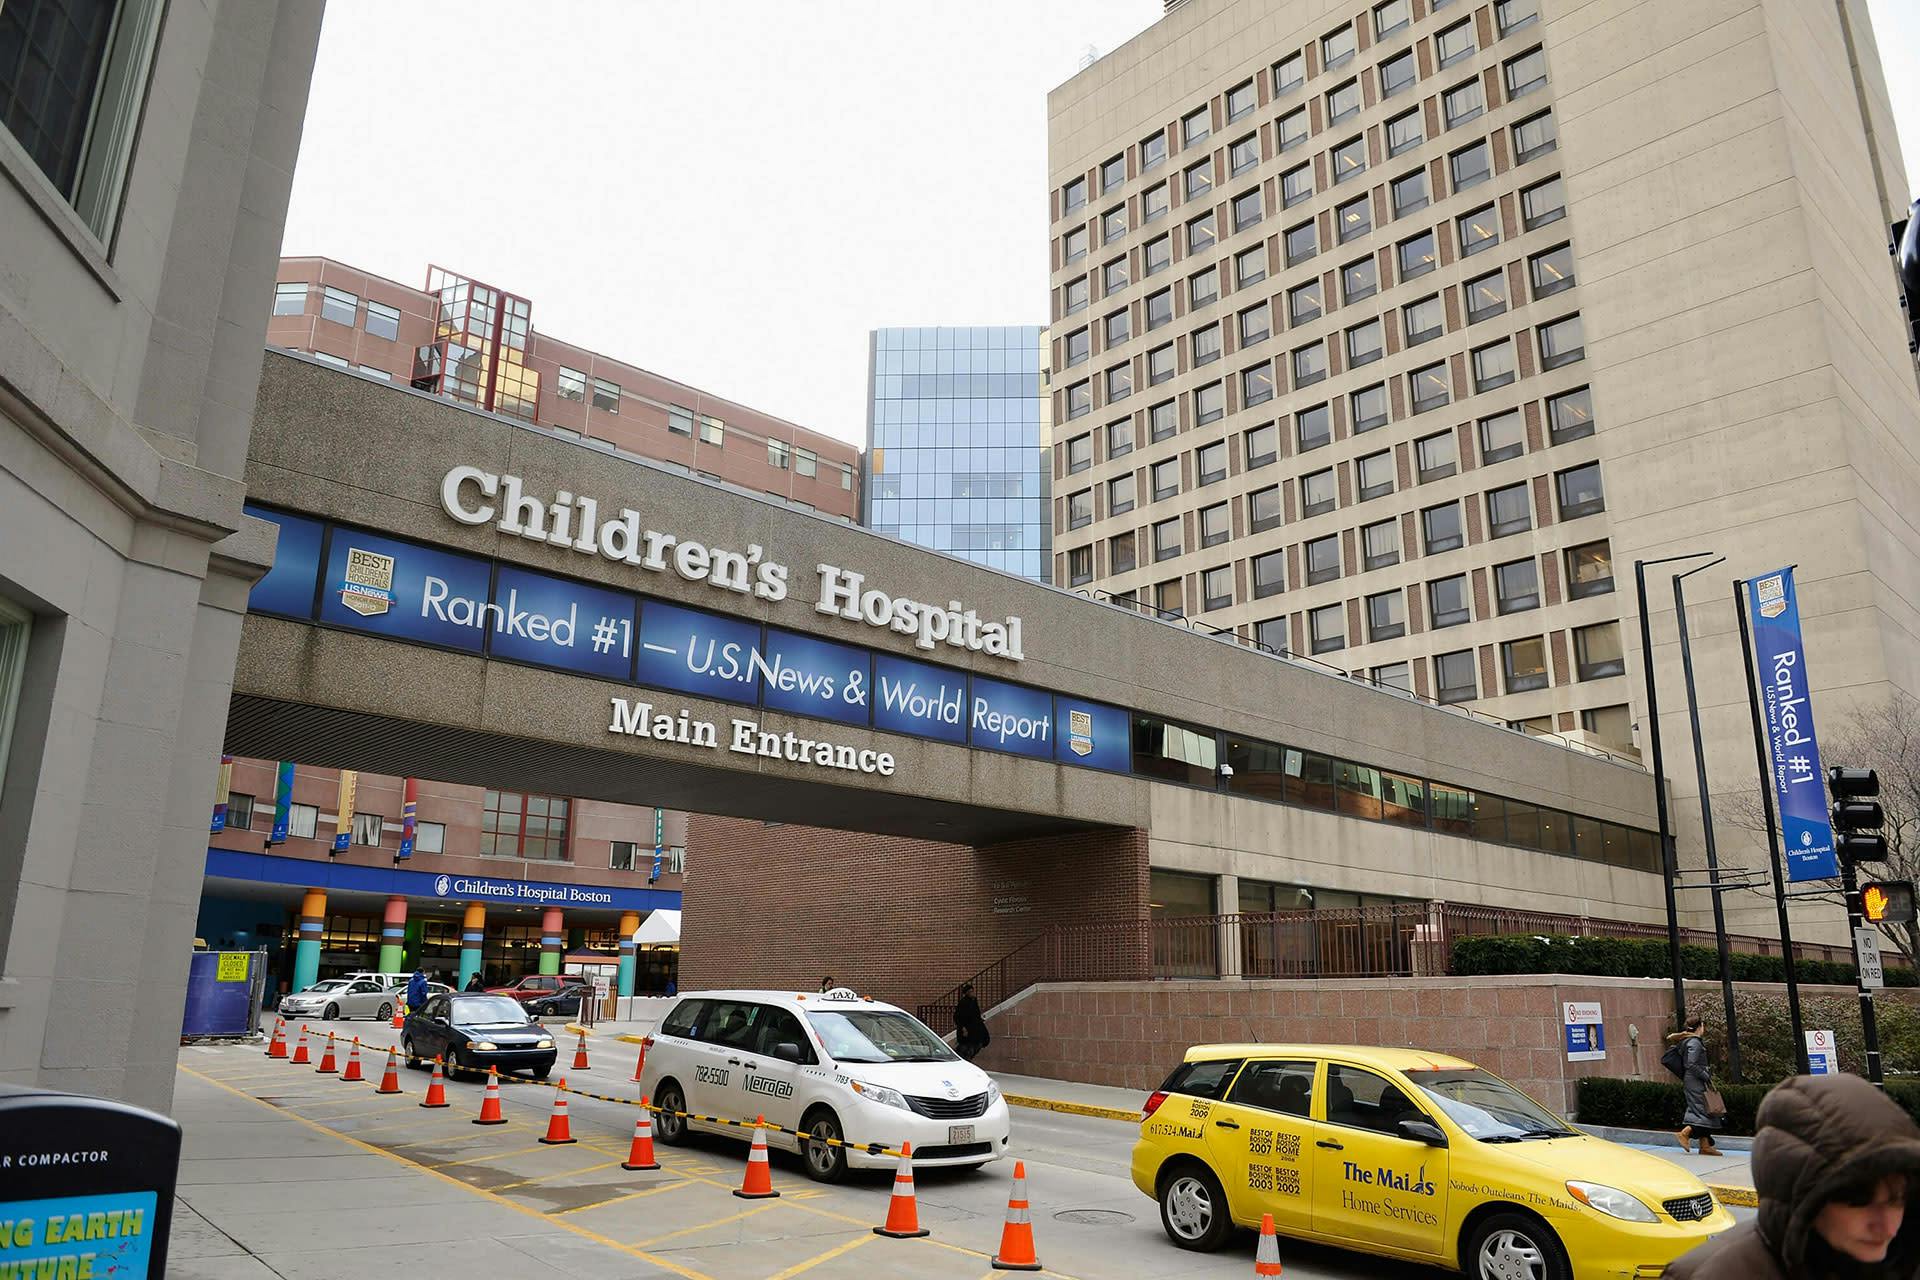 Children's Hospital Boston main entrance